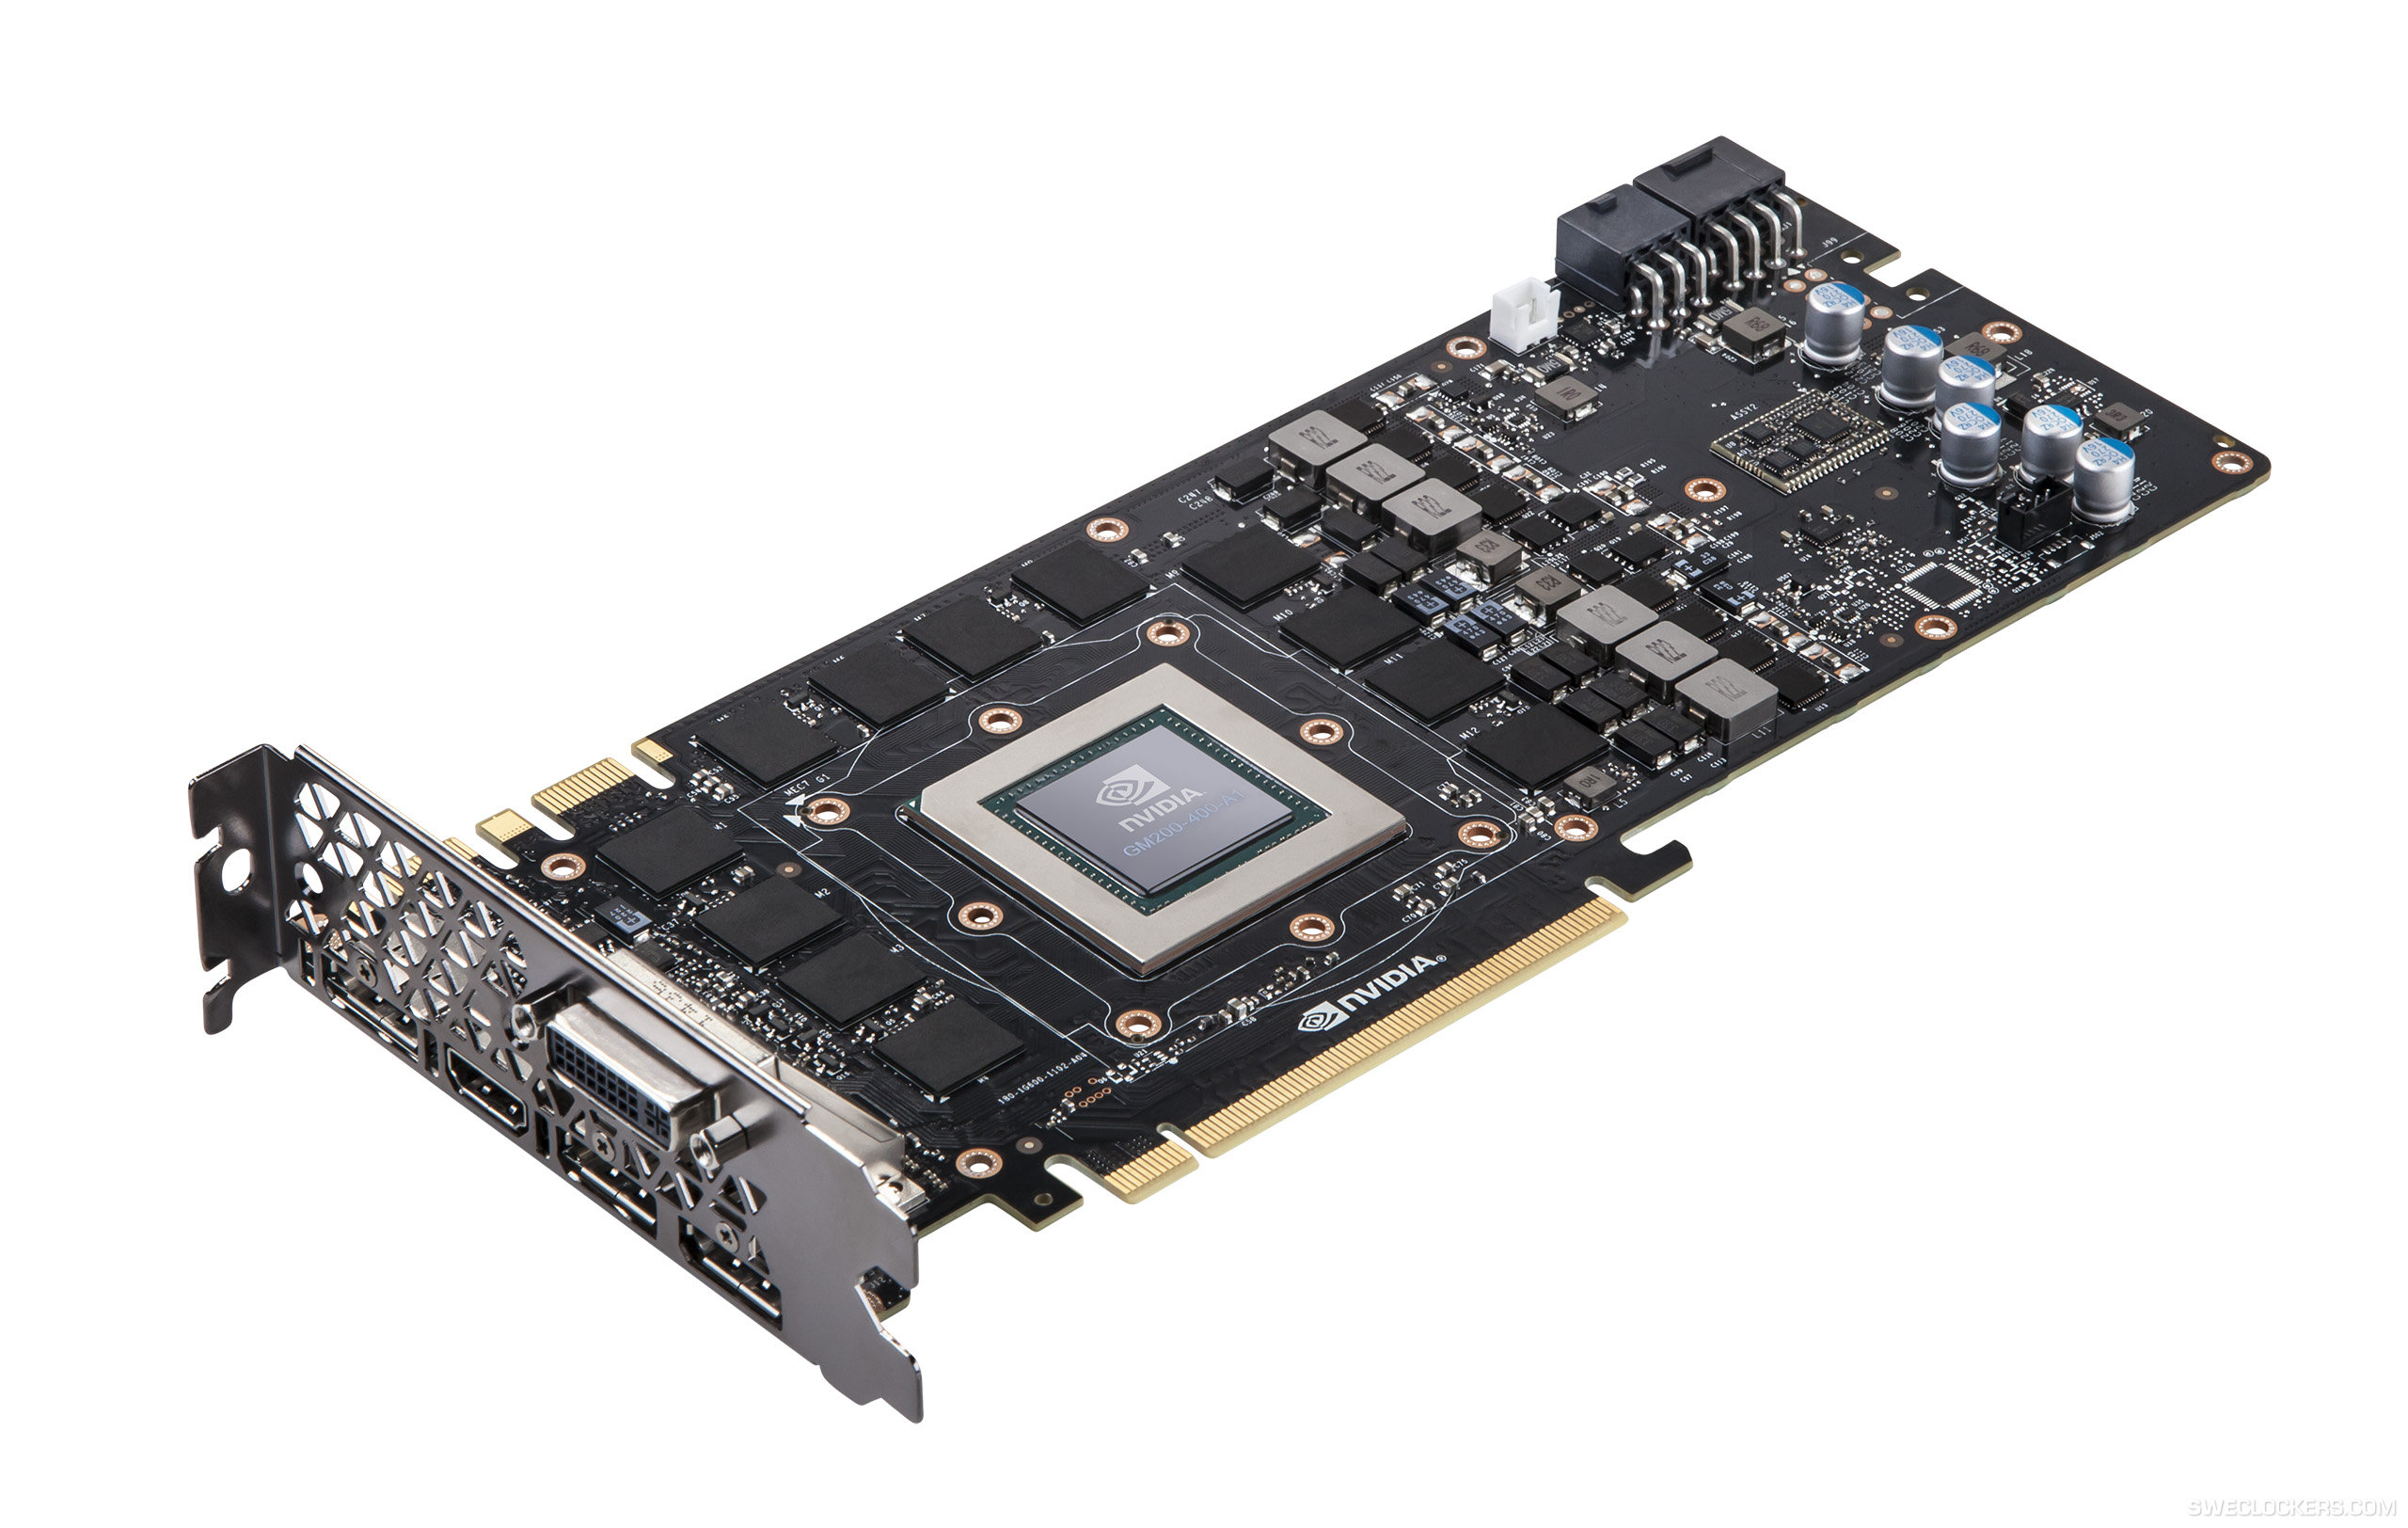 Immagine pubblicata in relazione al seguente contenuto: NVIDIA risponder alla Radeon R9 390X con la GeForce GTX 980 Ti? | Nome immagine: news22386_NVIDIA-GPU-Maxwell-GM200_1.jpg